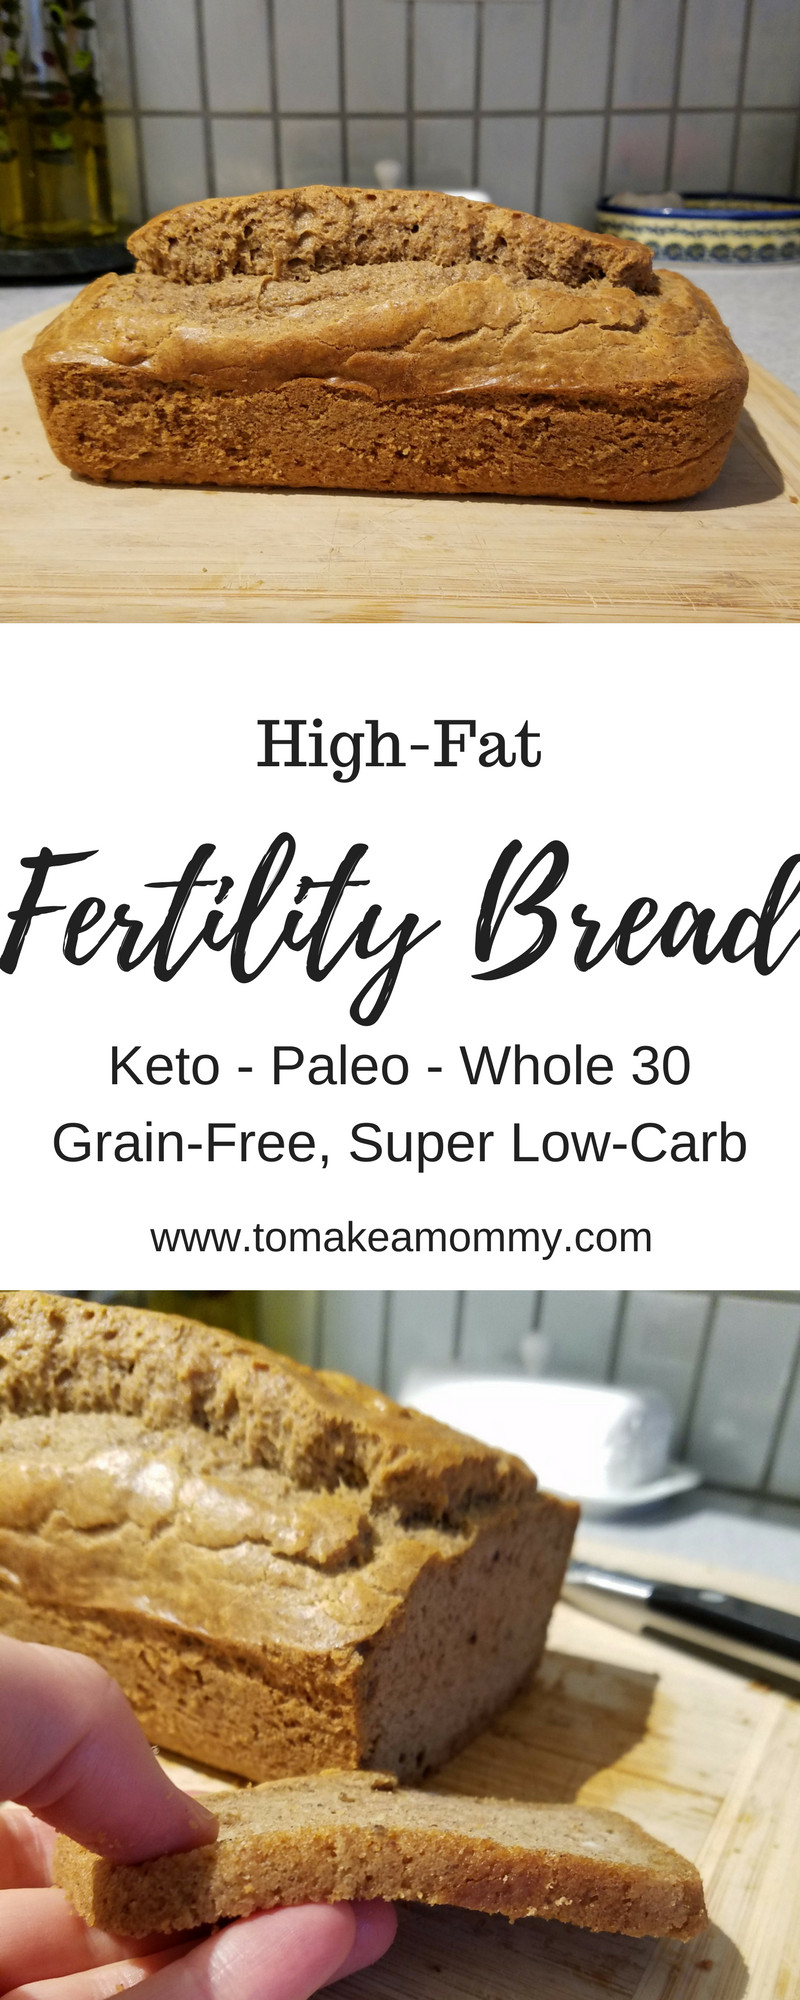 Keto Grain Free Bread
 High Fat Fertility Bread Recipe Keto Paleo Whole 30